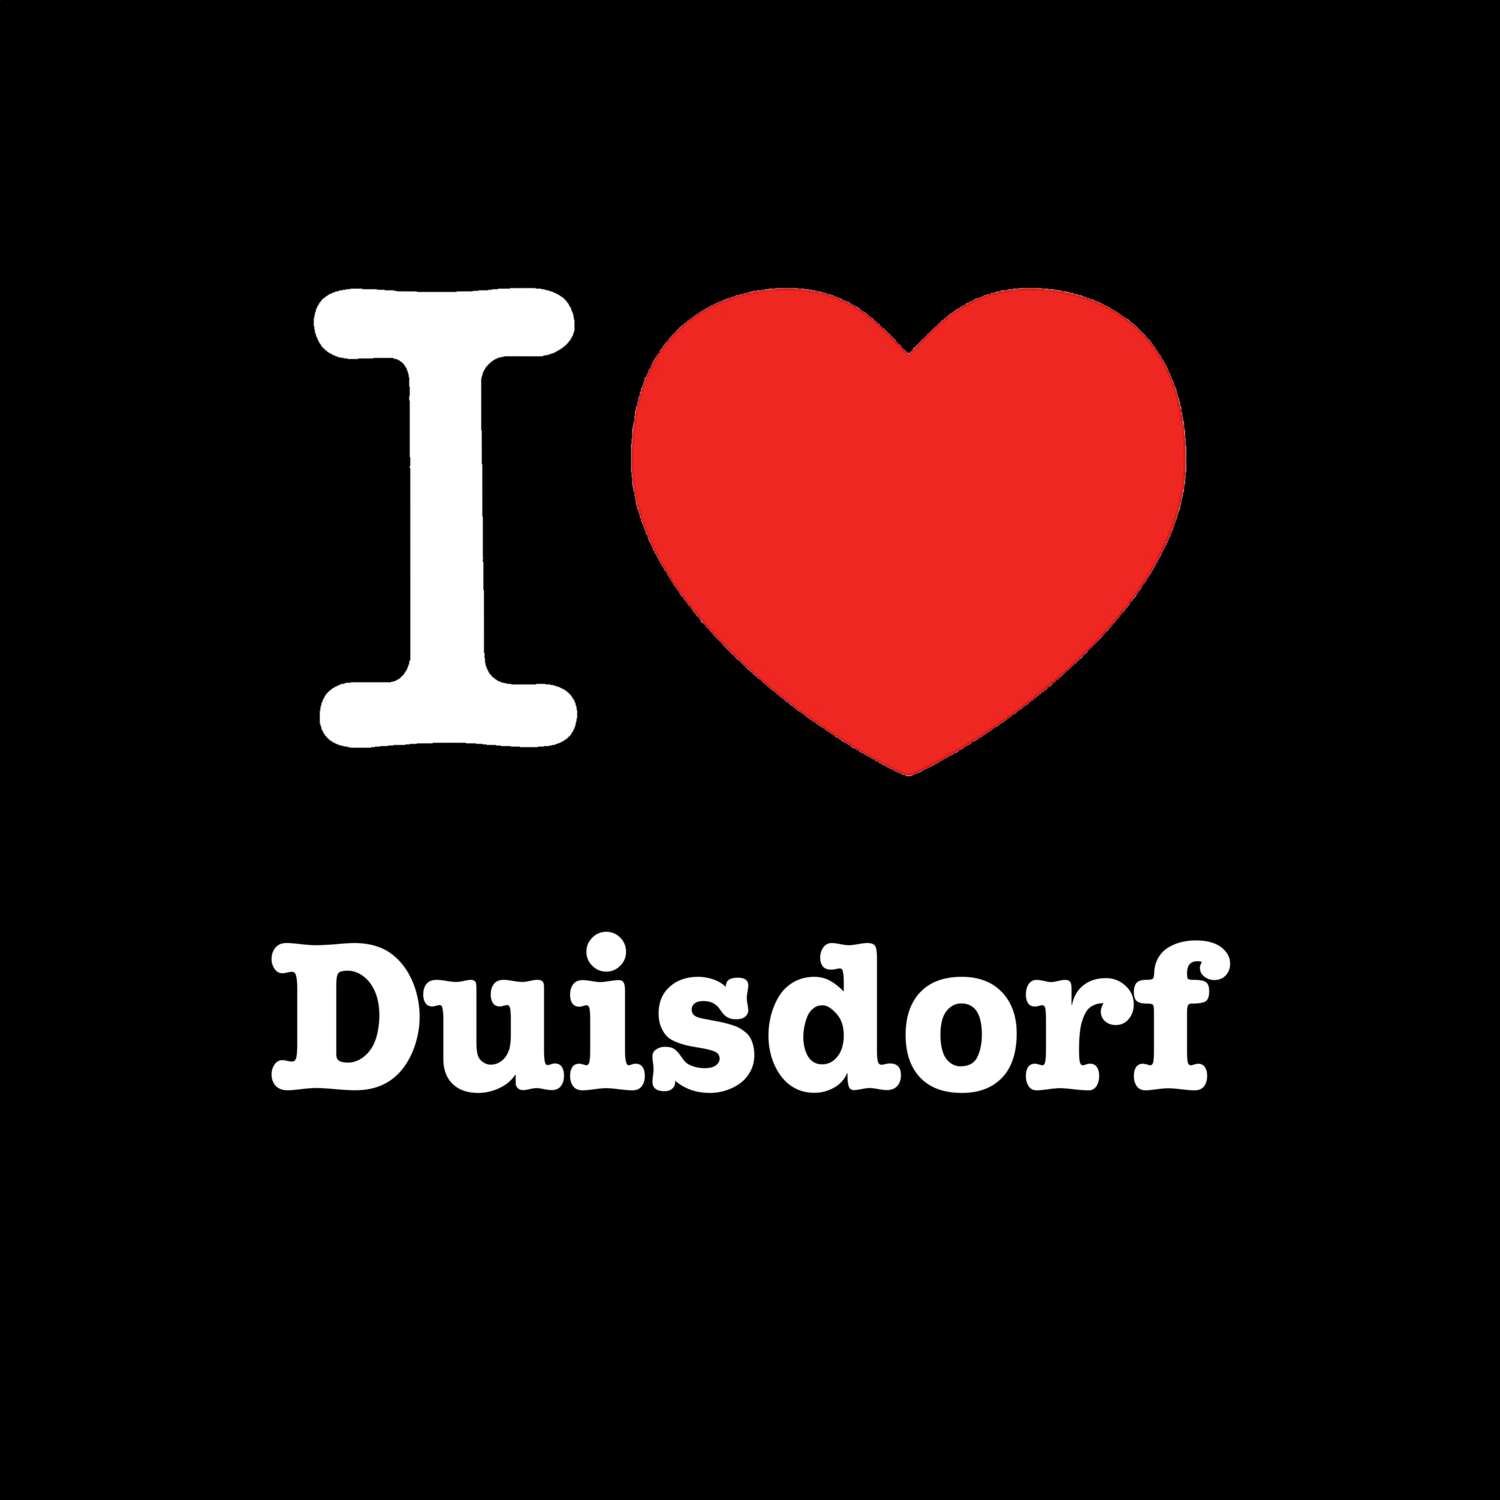 Duisdorf T-Shirt »I love«